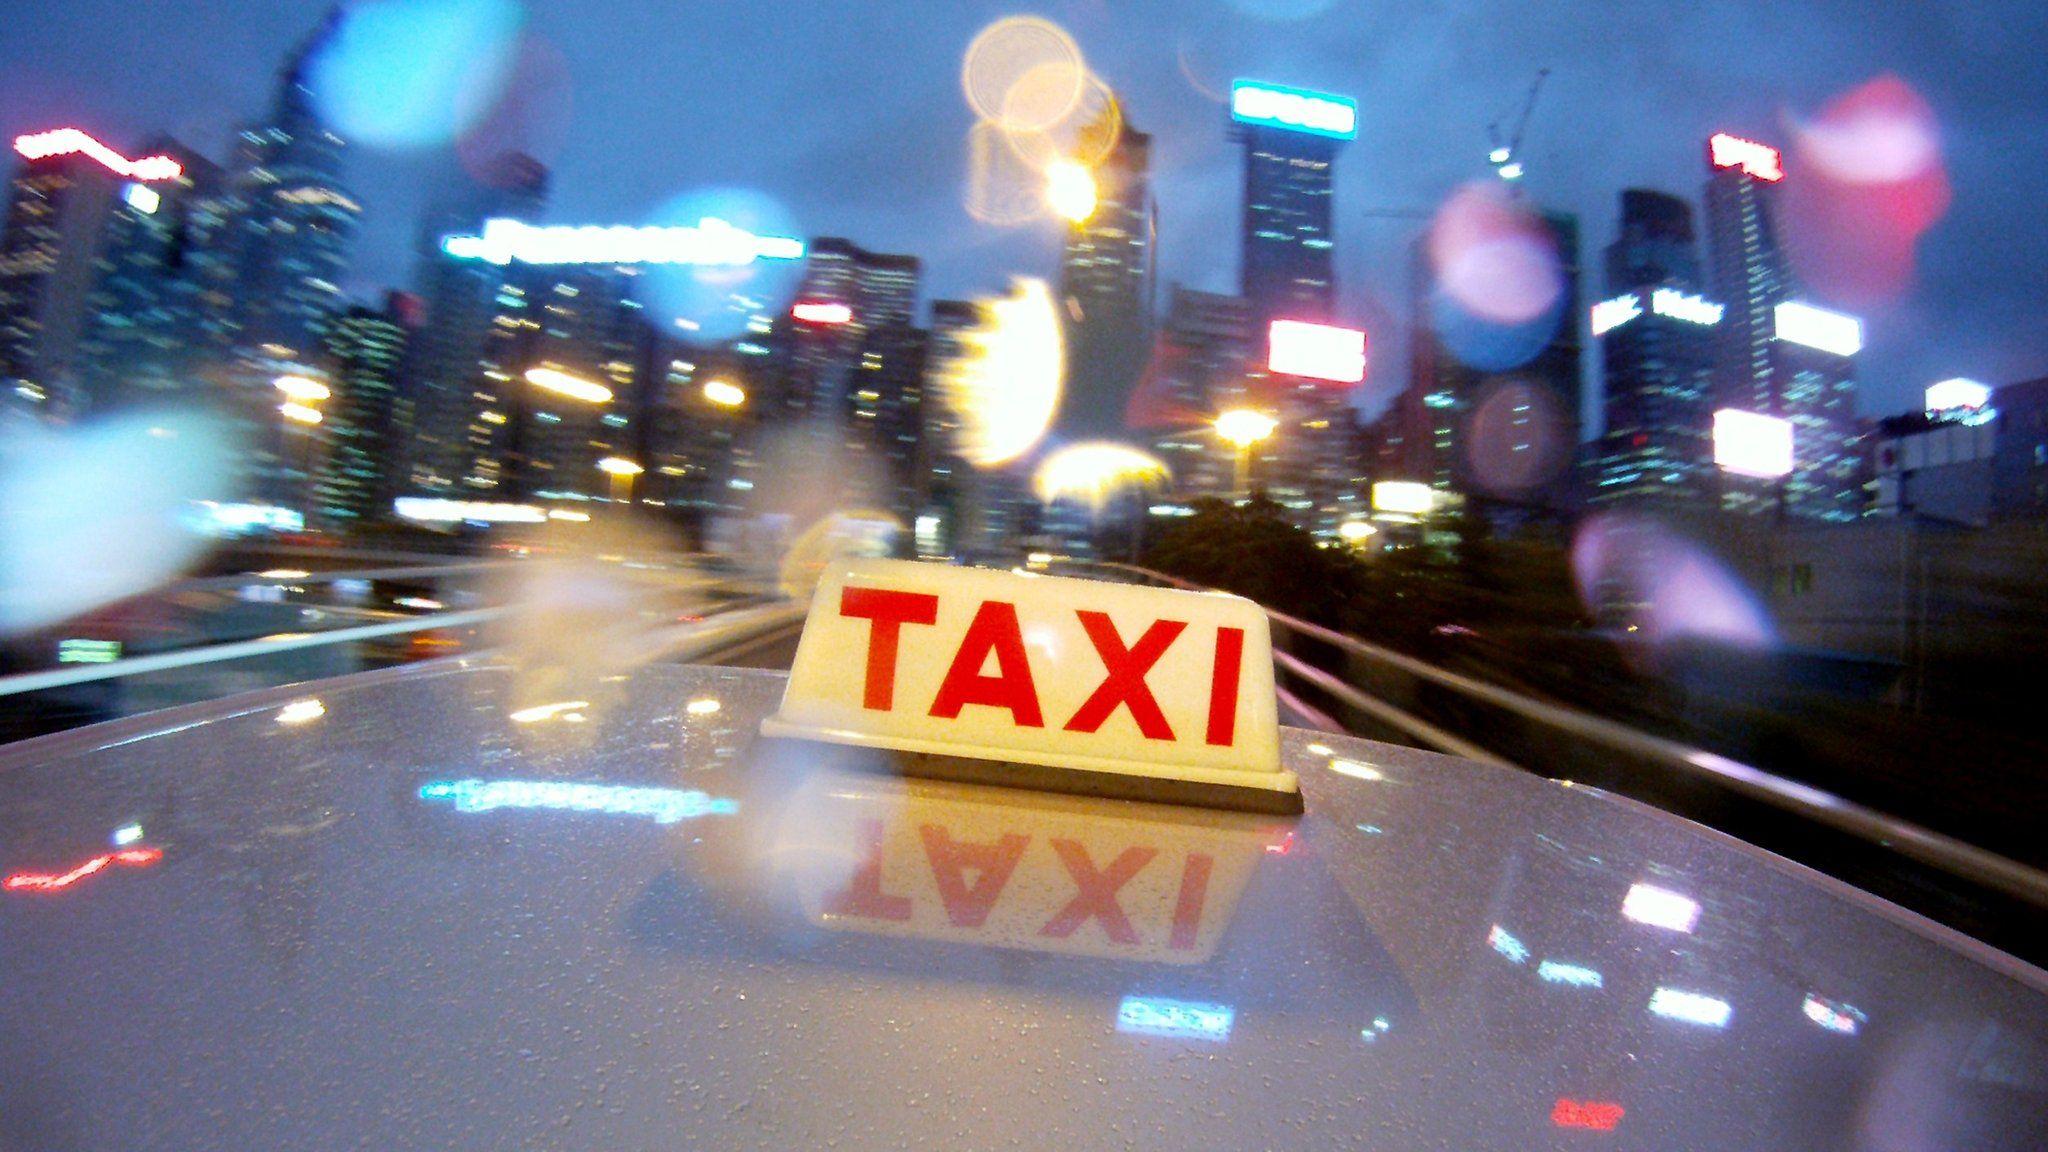 File image from Hong Kong taxi